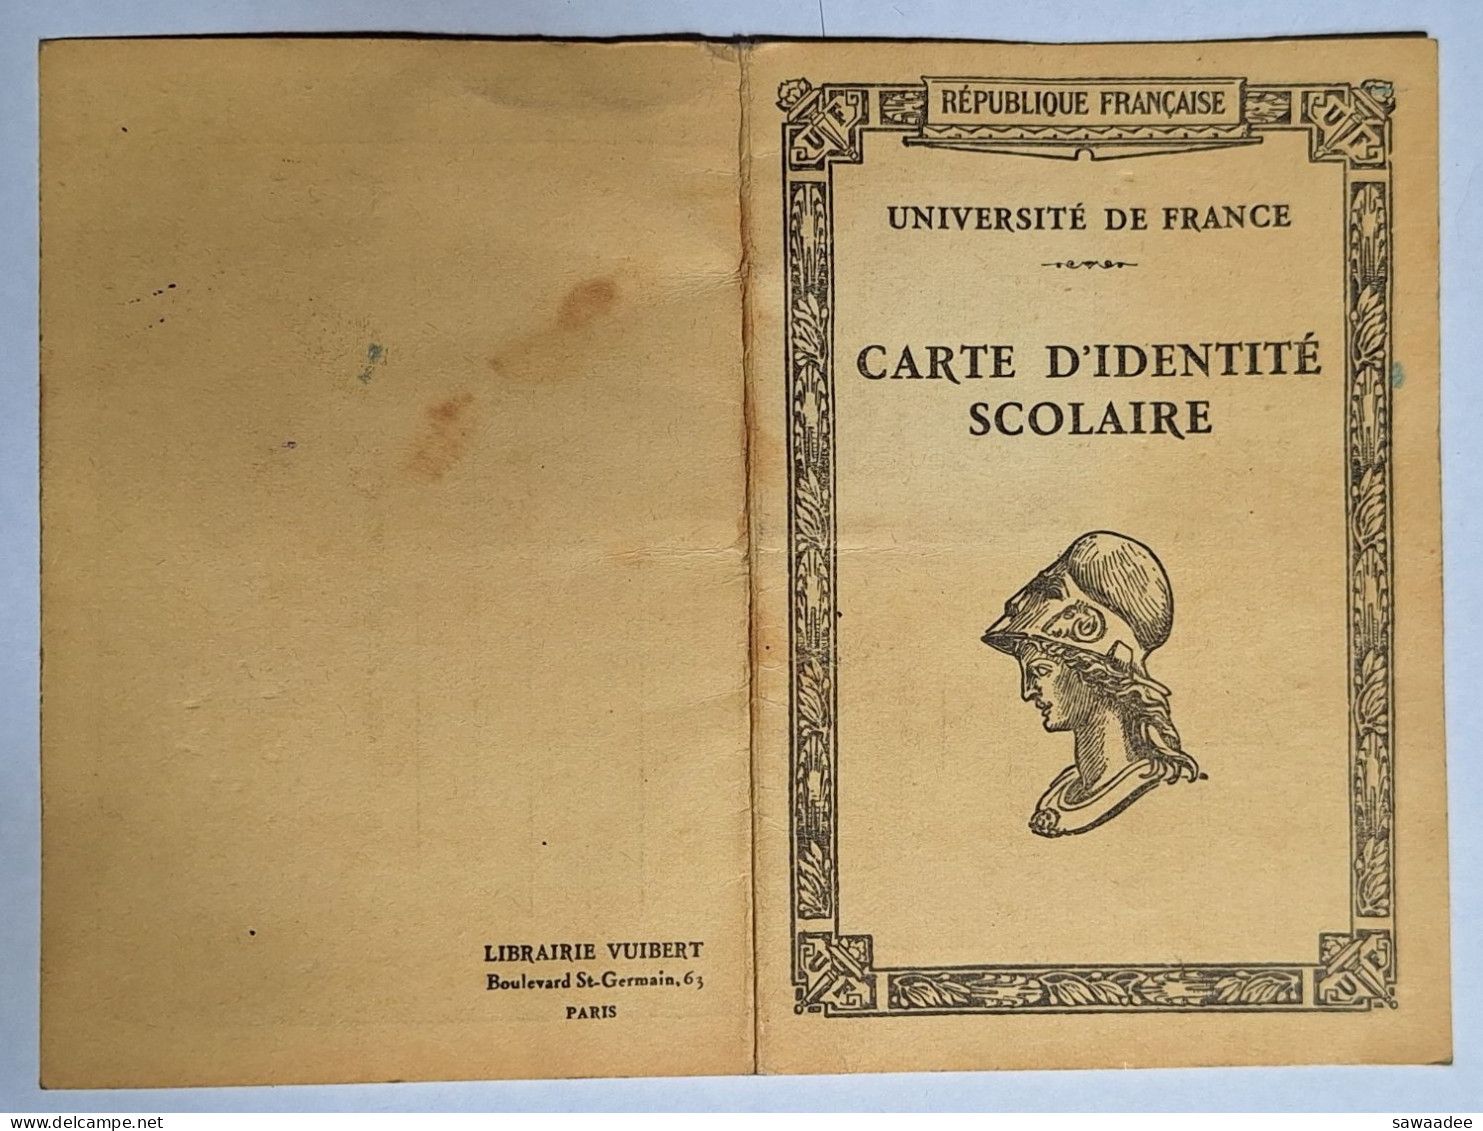 CARTE D'IDENTITE SCOLAIRE - UNIVERSITE DE FRANCE - LYCEE DE JEUNES FILLES DE TOULOUSE - ANNEE SCOLAIRE 1939/1940 - Membership Cards